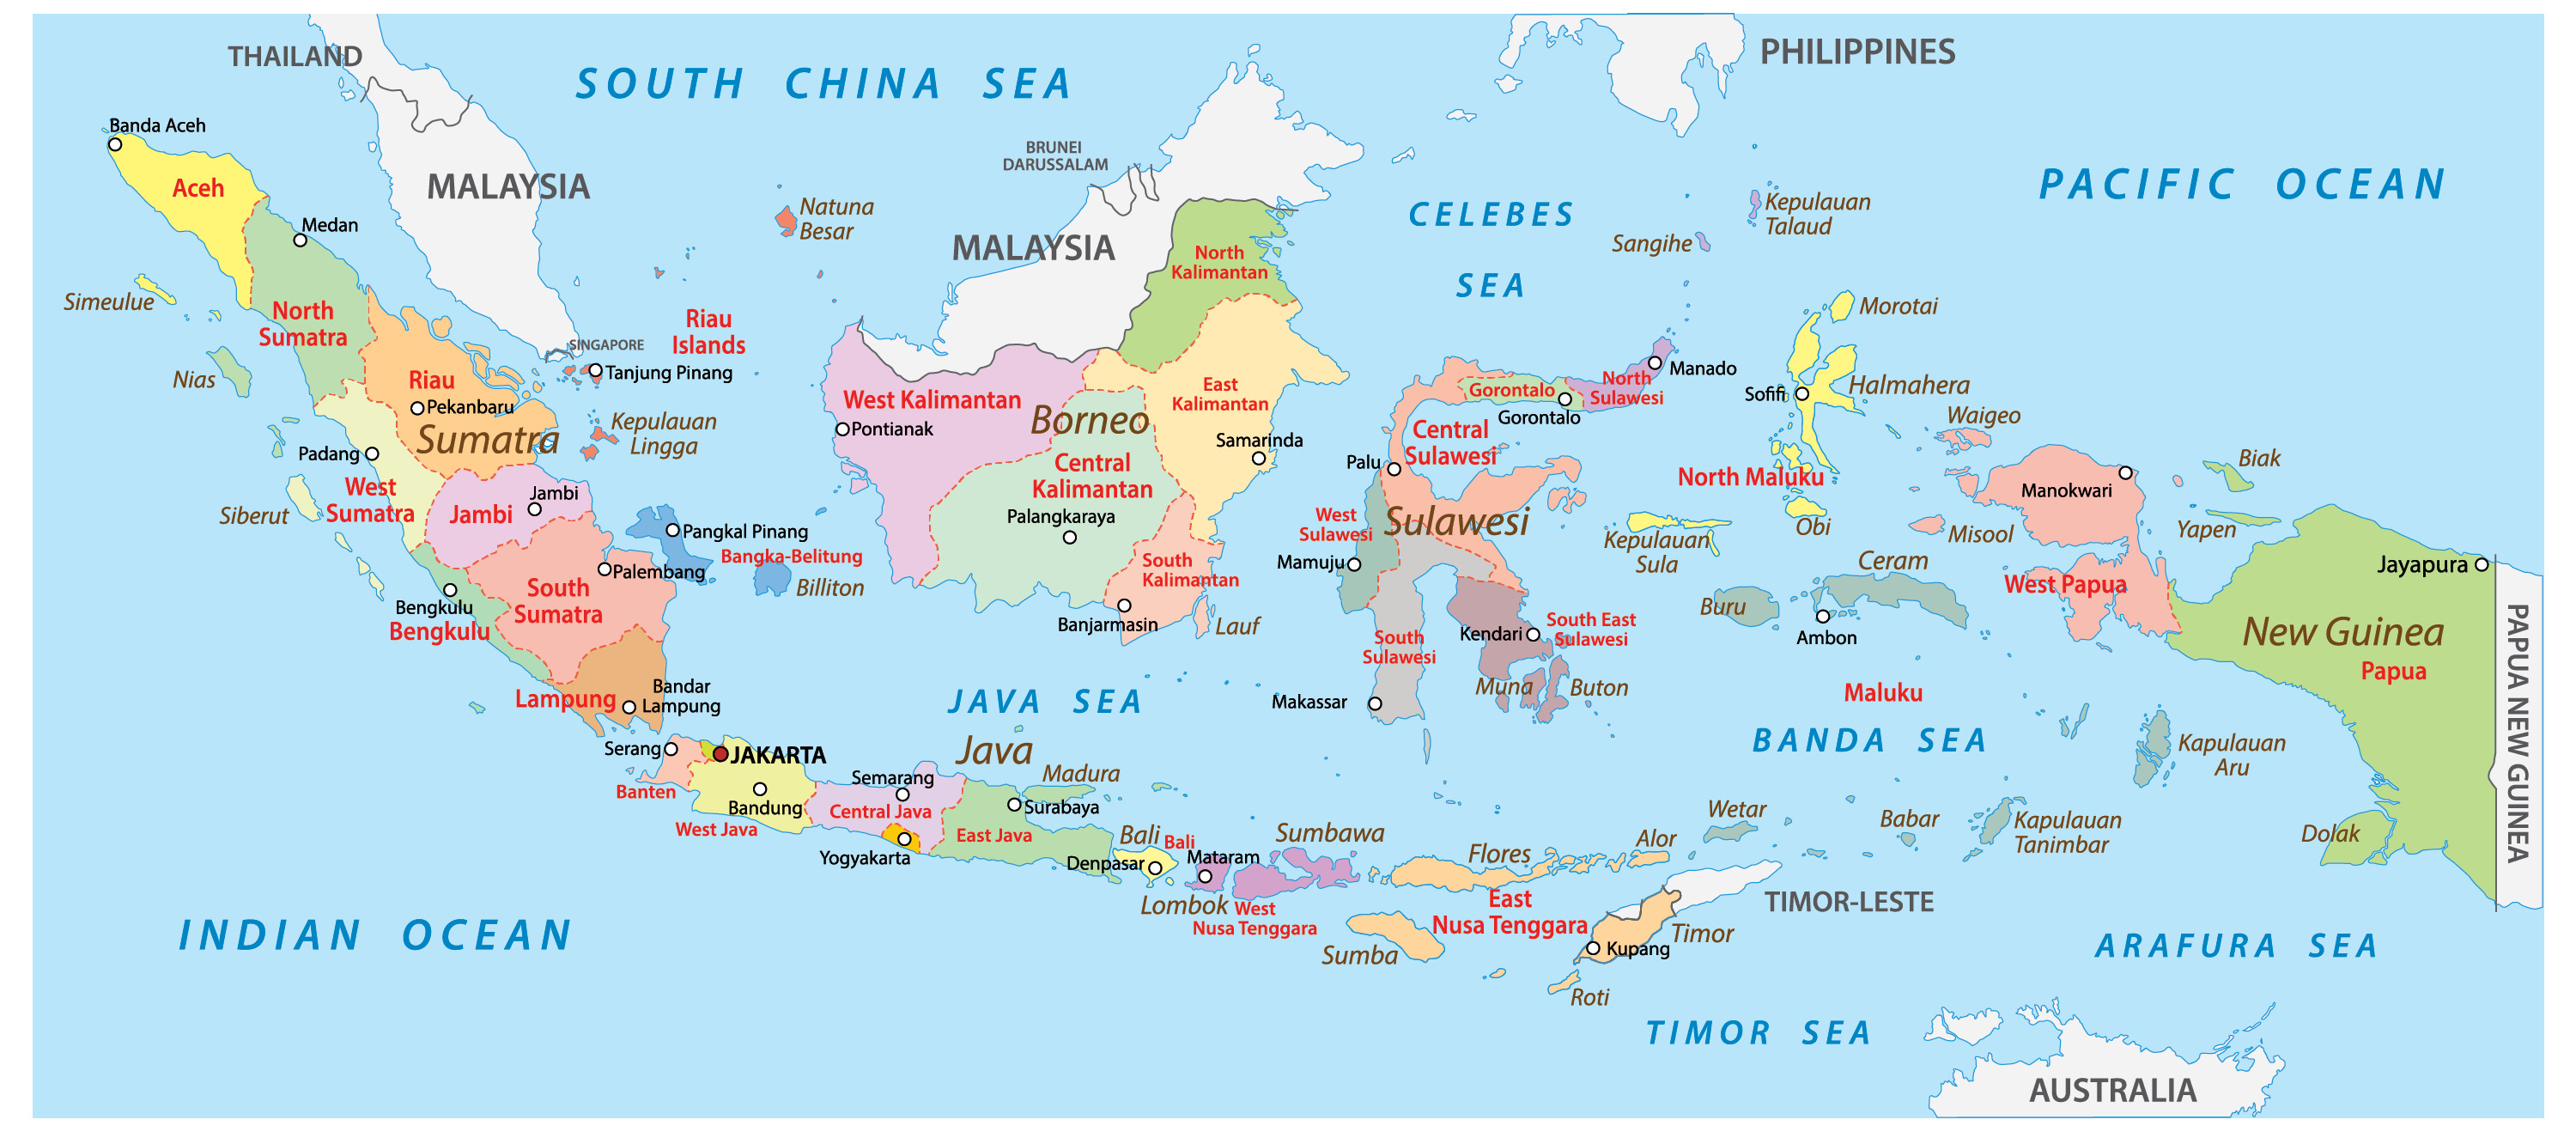 Peta Indonesia Lengkap Dengan Komponen Peta Imagesee Images And Photos Finder